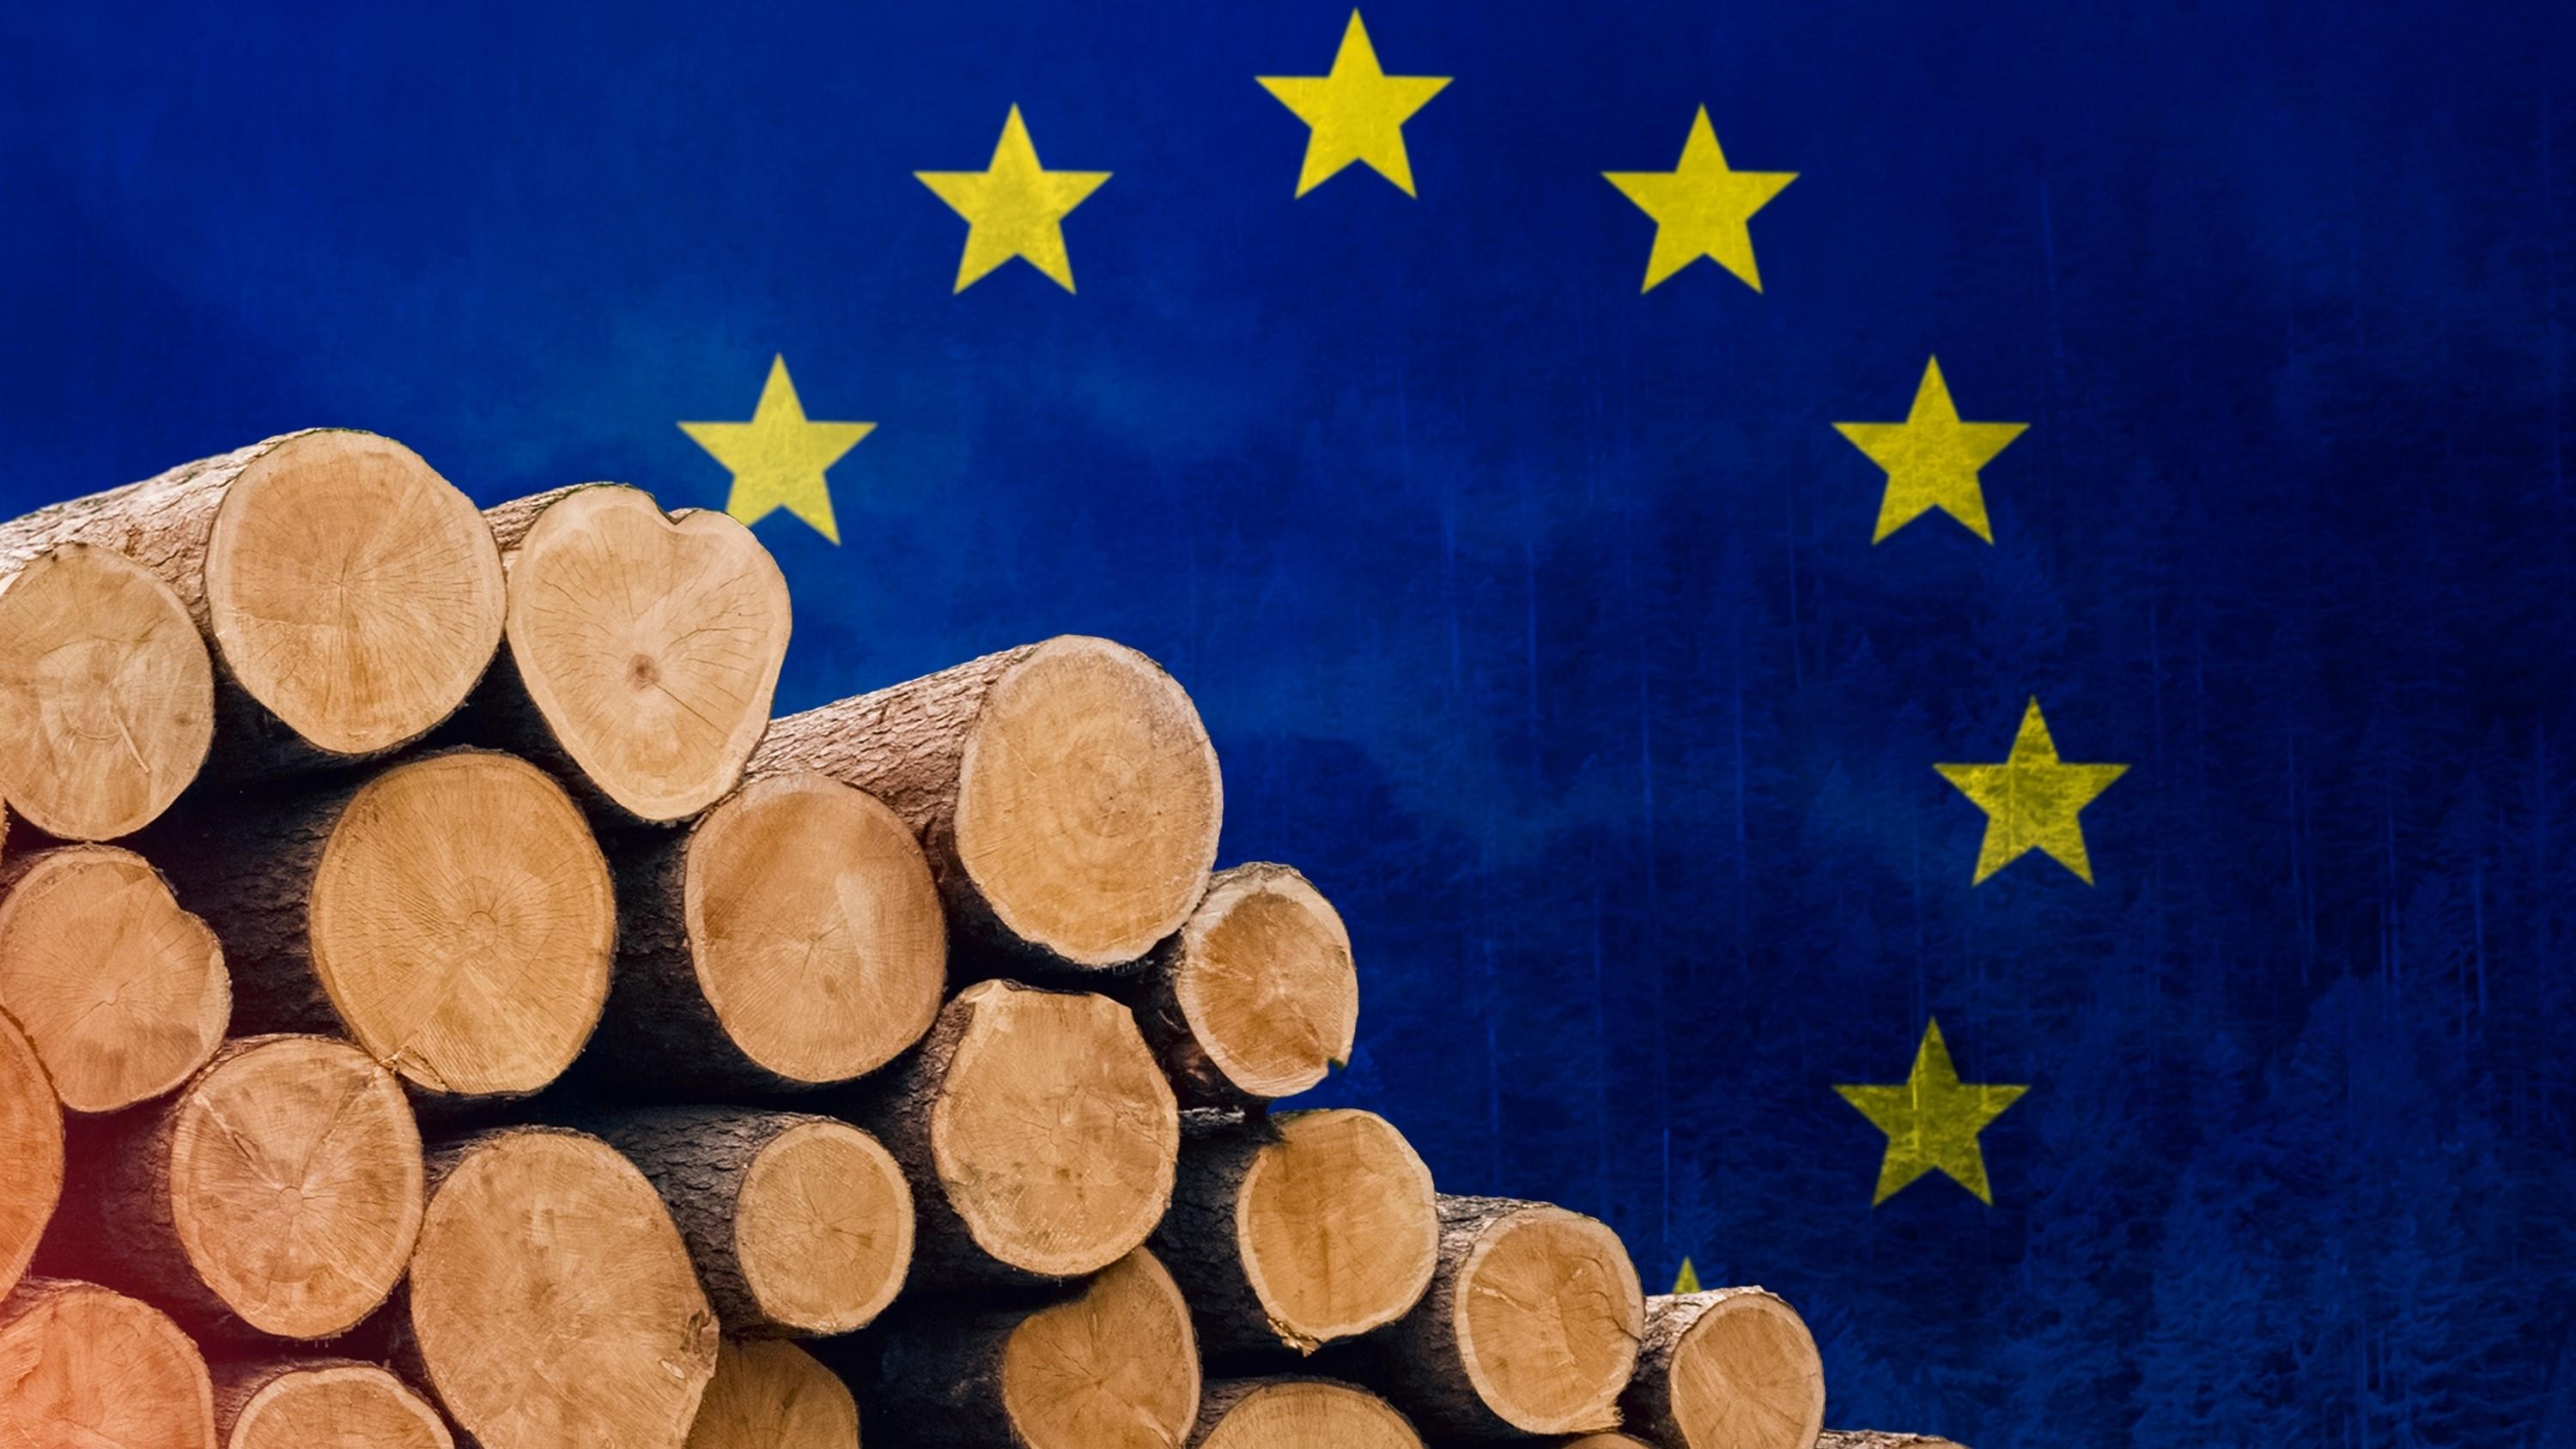 EU:s skogsstrategi missar hänsynen till medlemsländernas mycket olika förutsättningar. Foto: ArtRich/Shutterstock